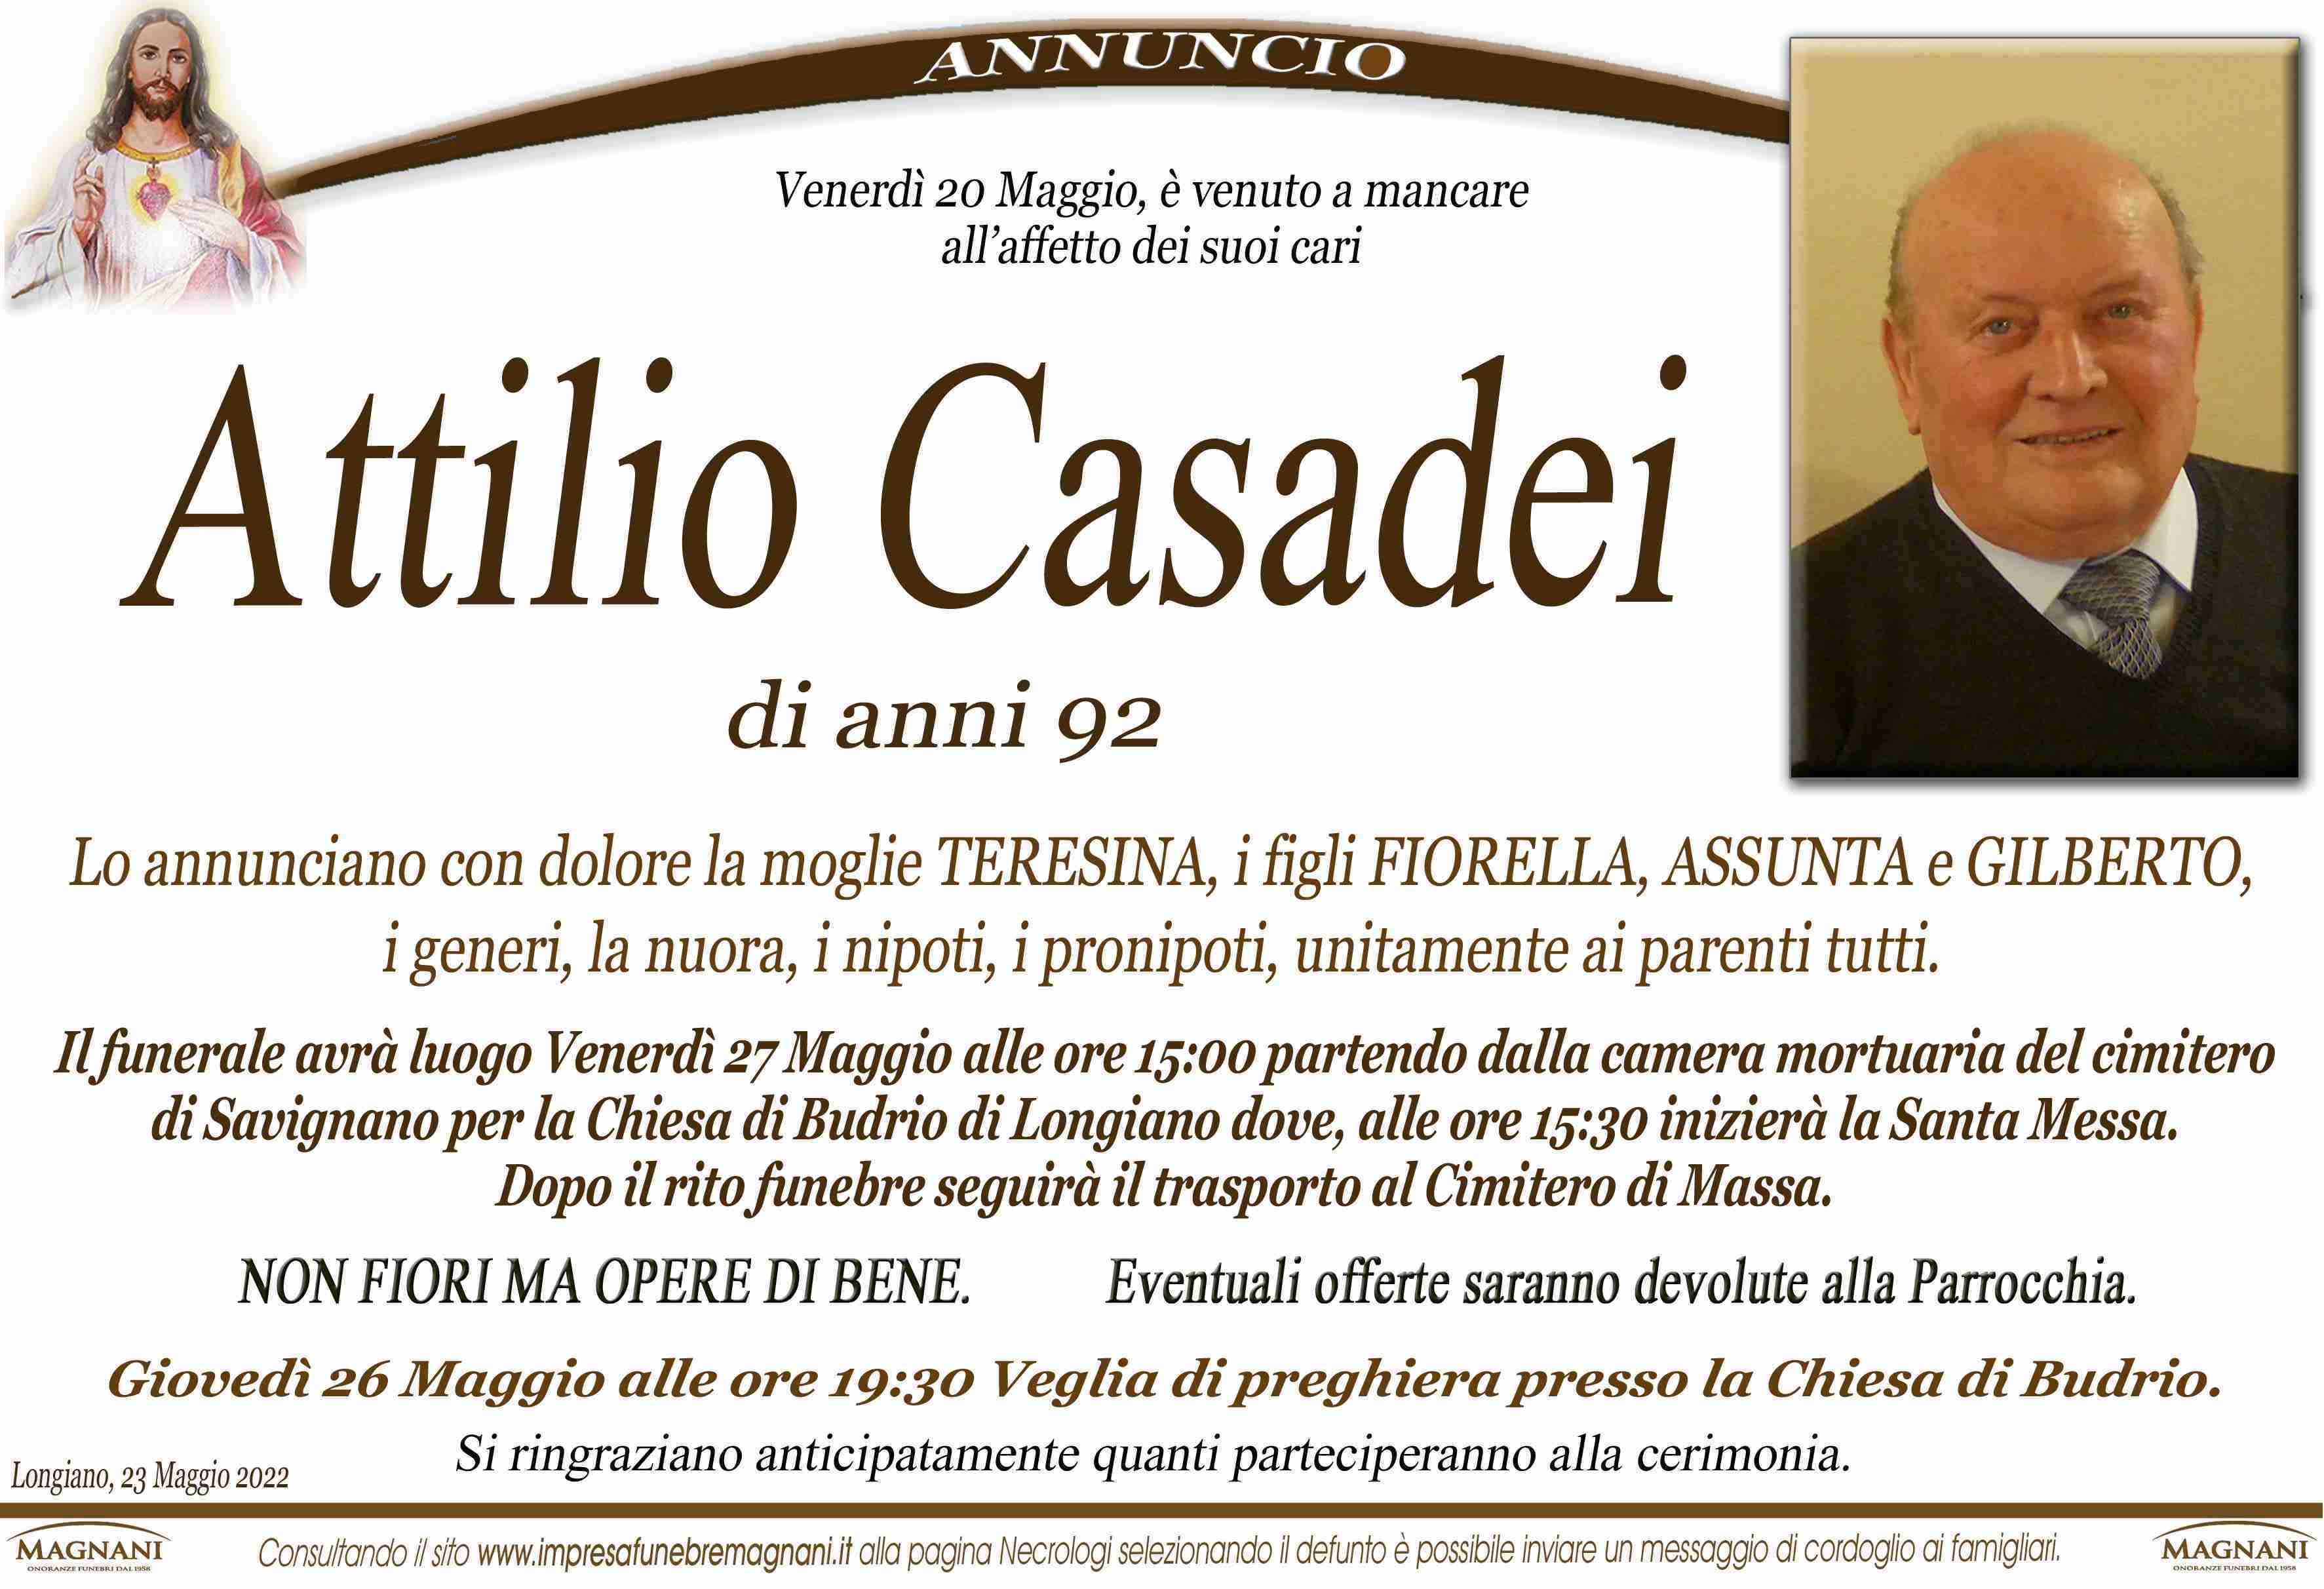 Attilio Casadei